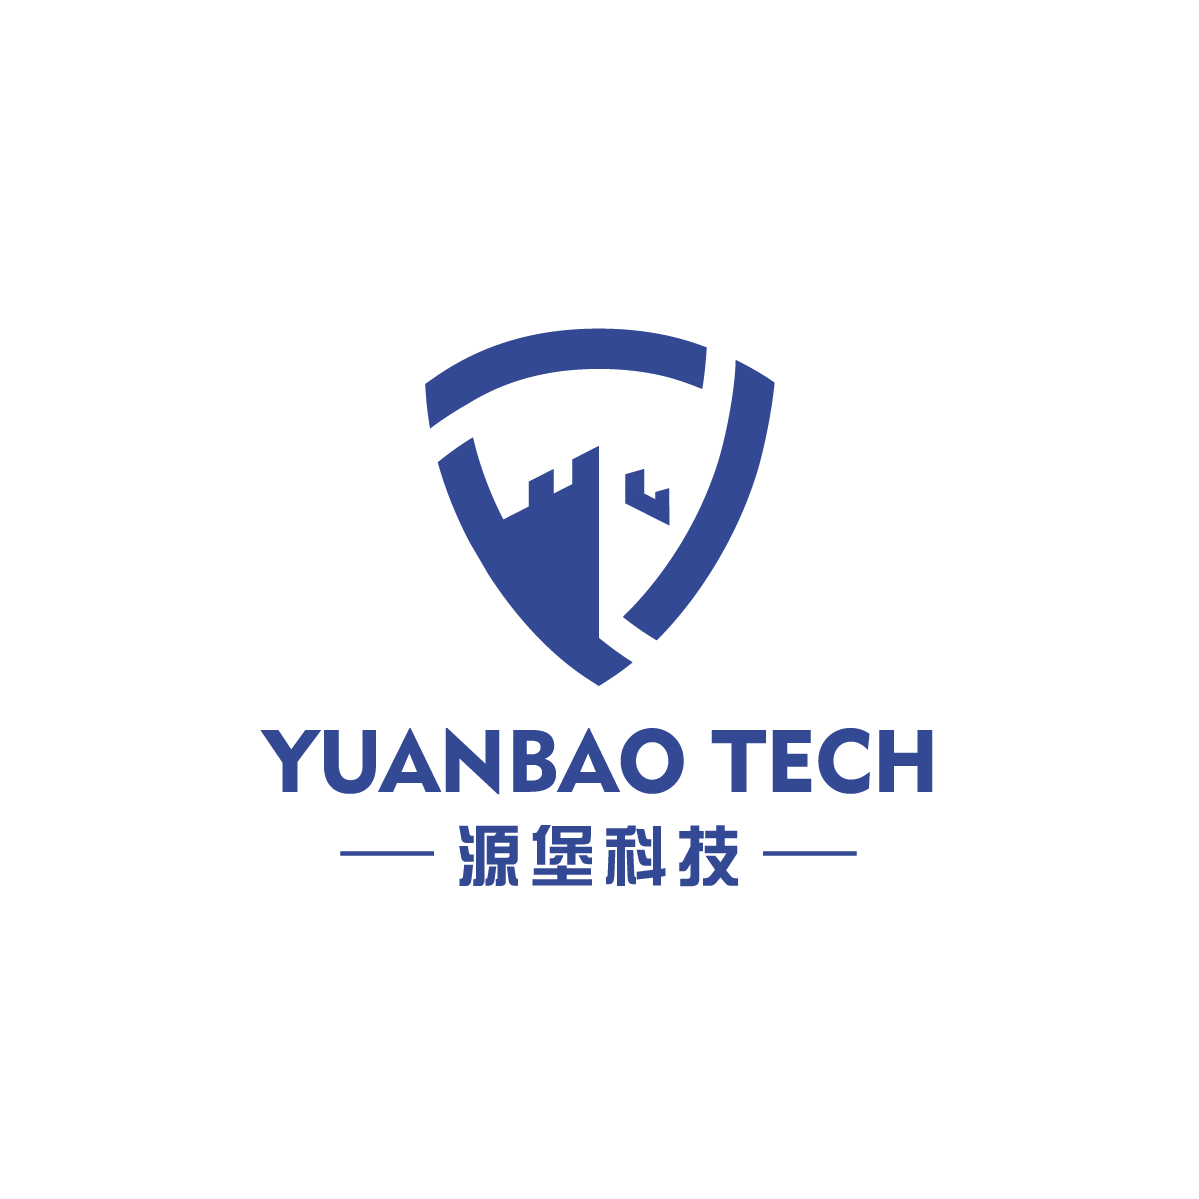 Yuanbao Technology